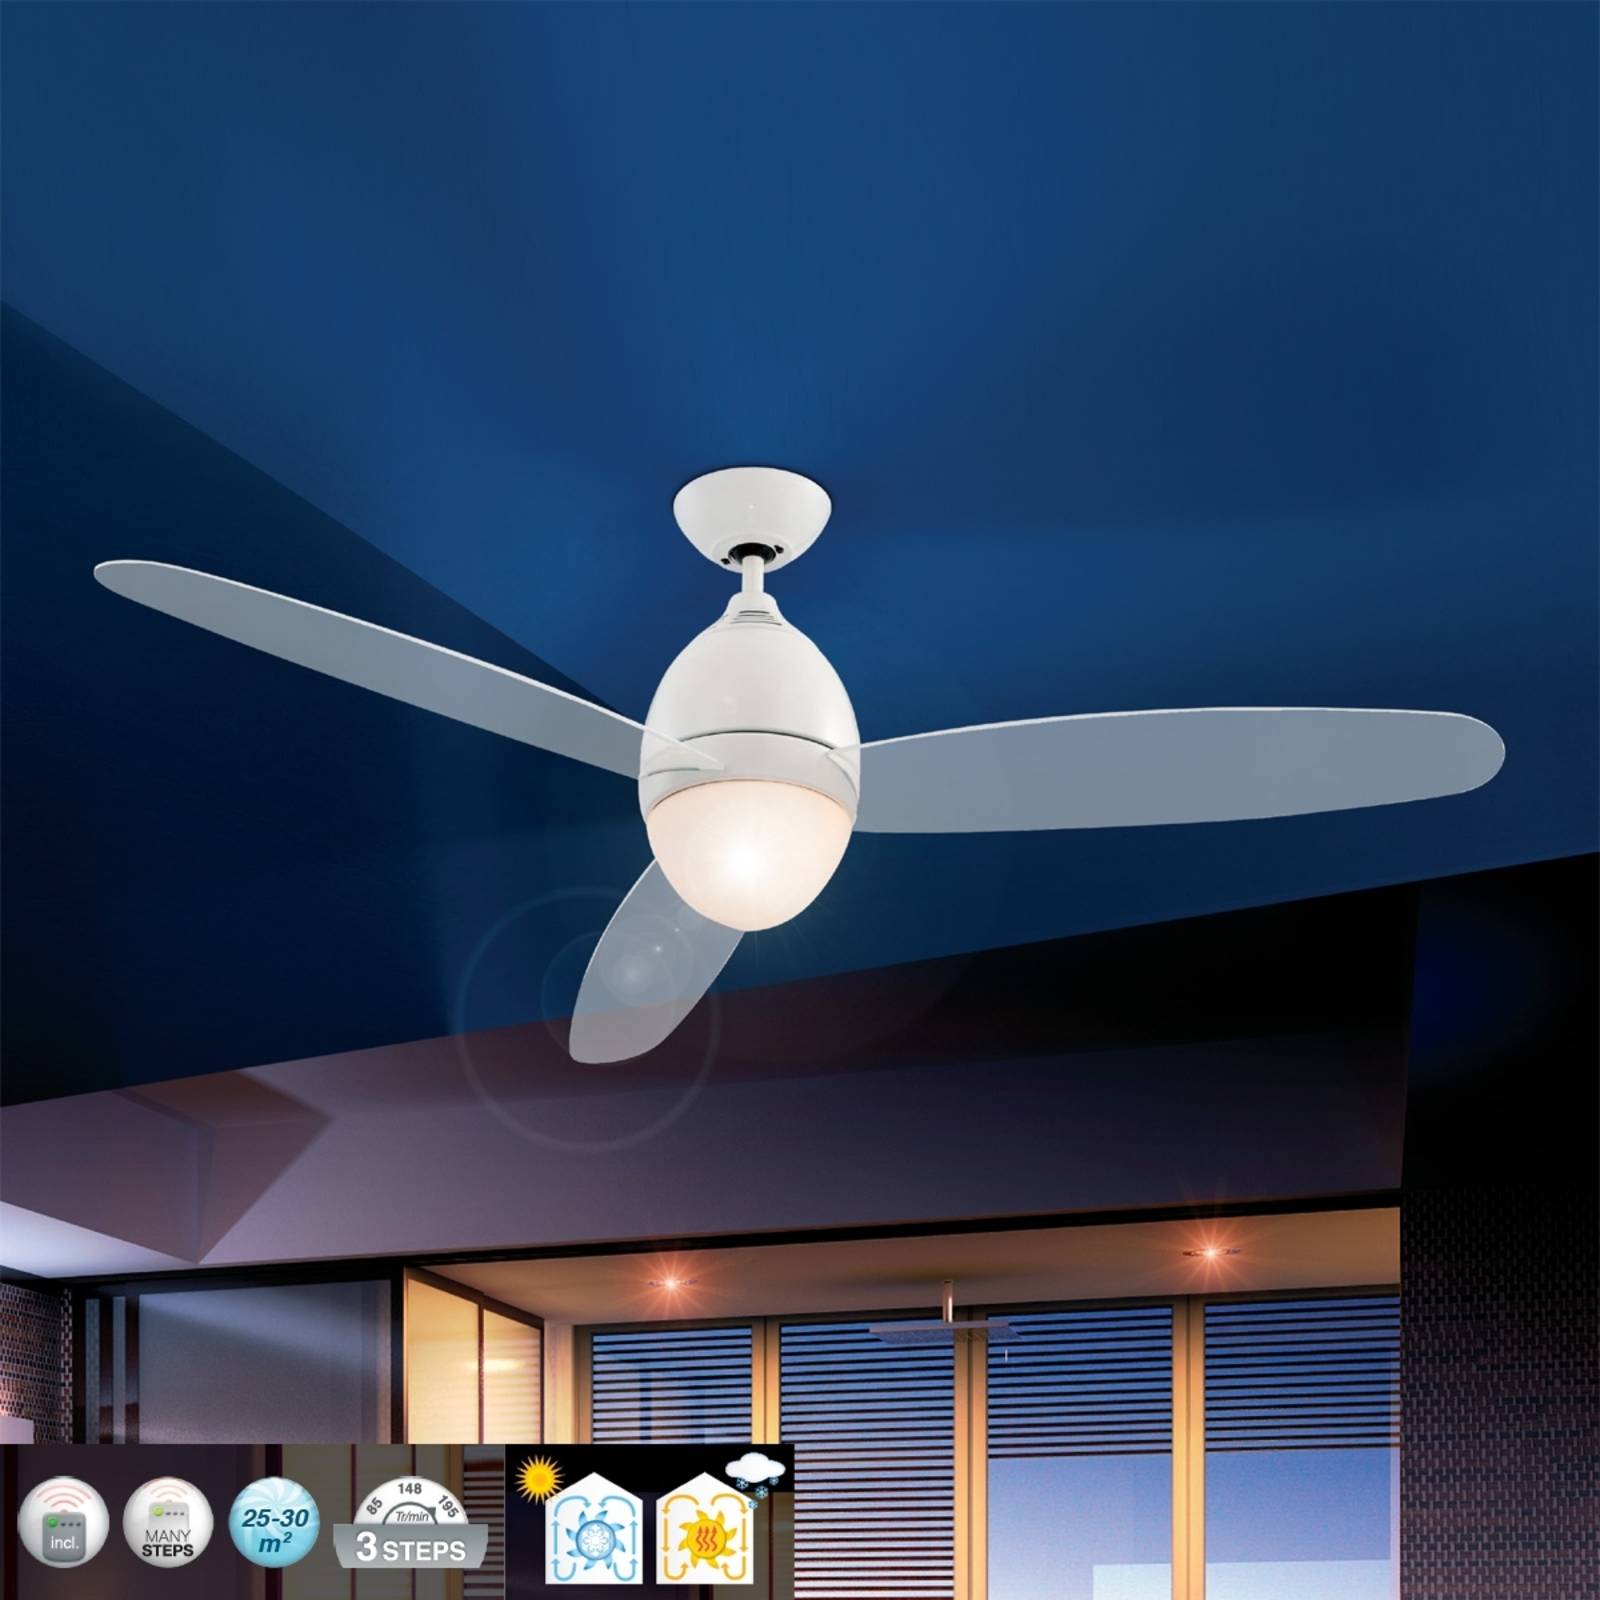 Premier White Ceiling Fan, 132 cm